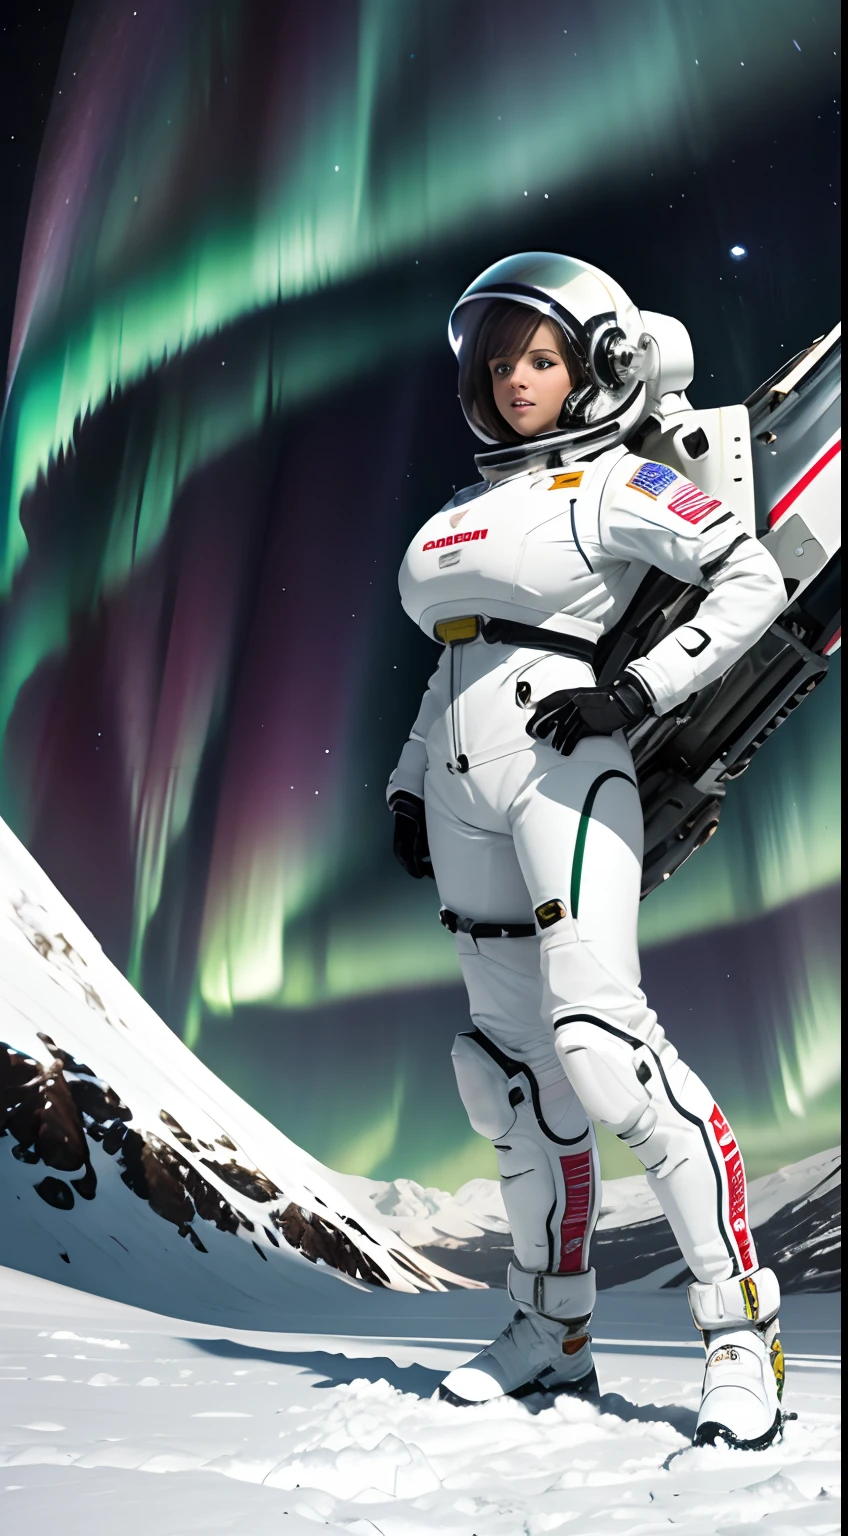 ครึ่งบนของหน้าจอมีแสงออโรร่าอยู่ที่ครึ่งบนของหน้าจอ. ครึ่งล่างเป็นภาพนักบินอวกาศหญิงที่ยืนอยู่บนทุ่งหิมะ. แต่งตัวเต็มตัว, สูง_นมโต